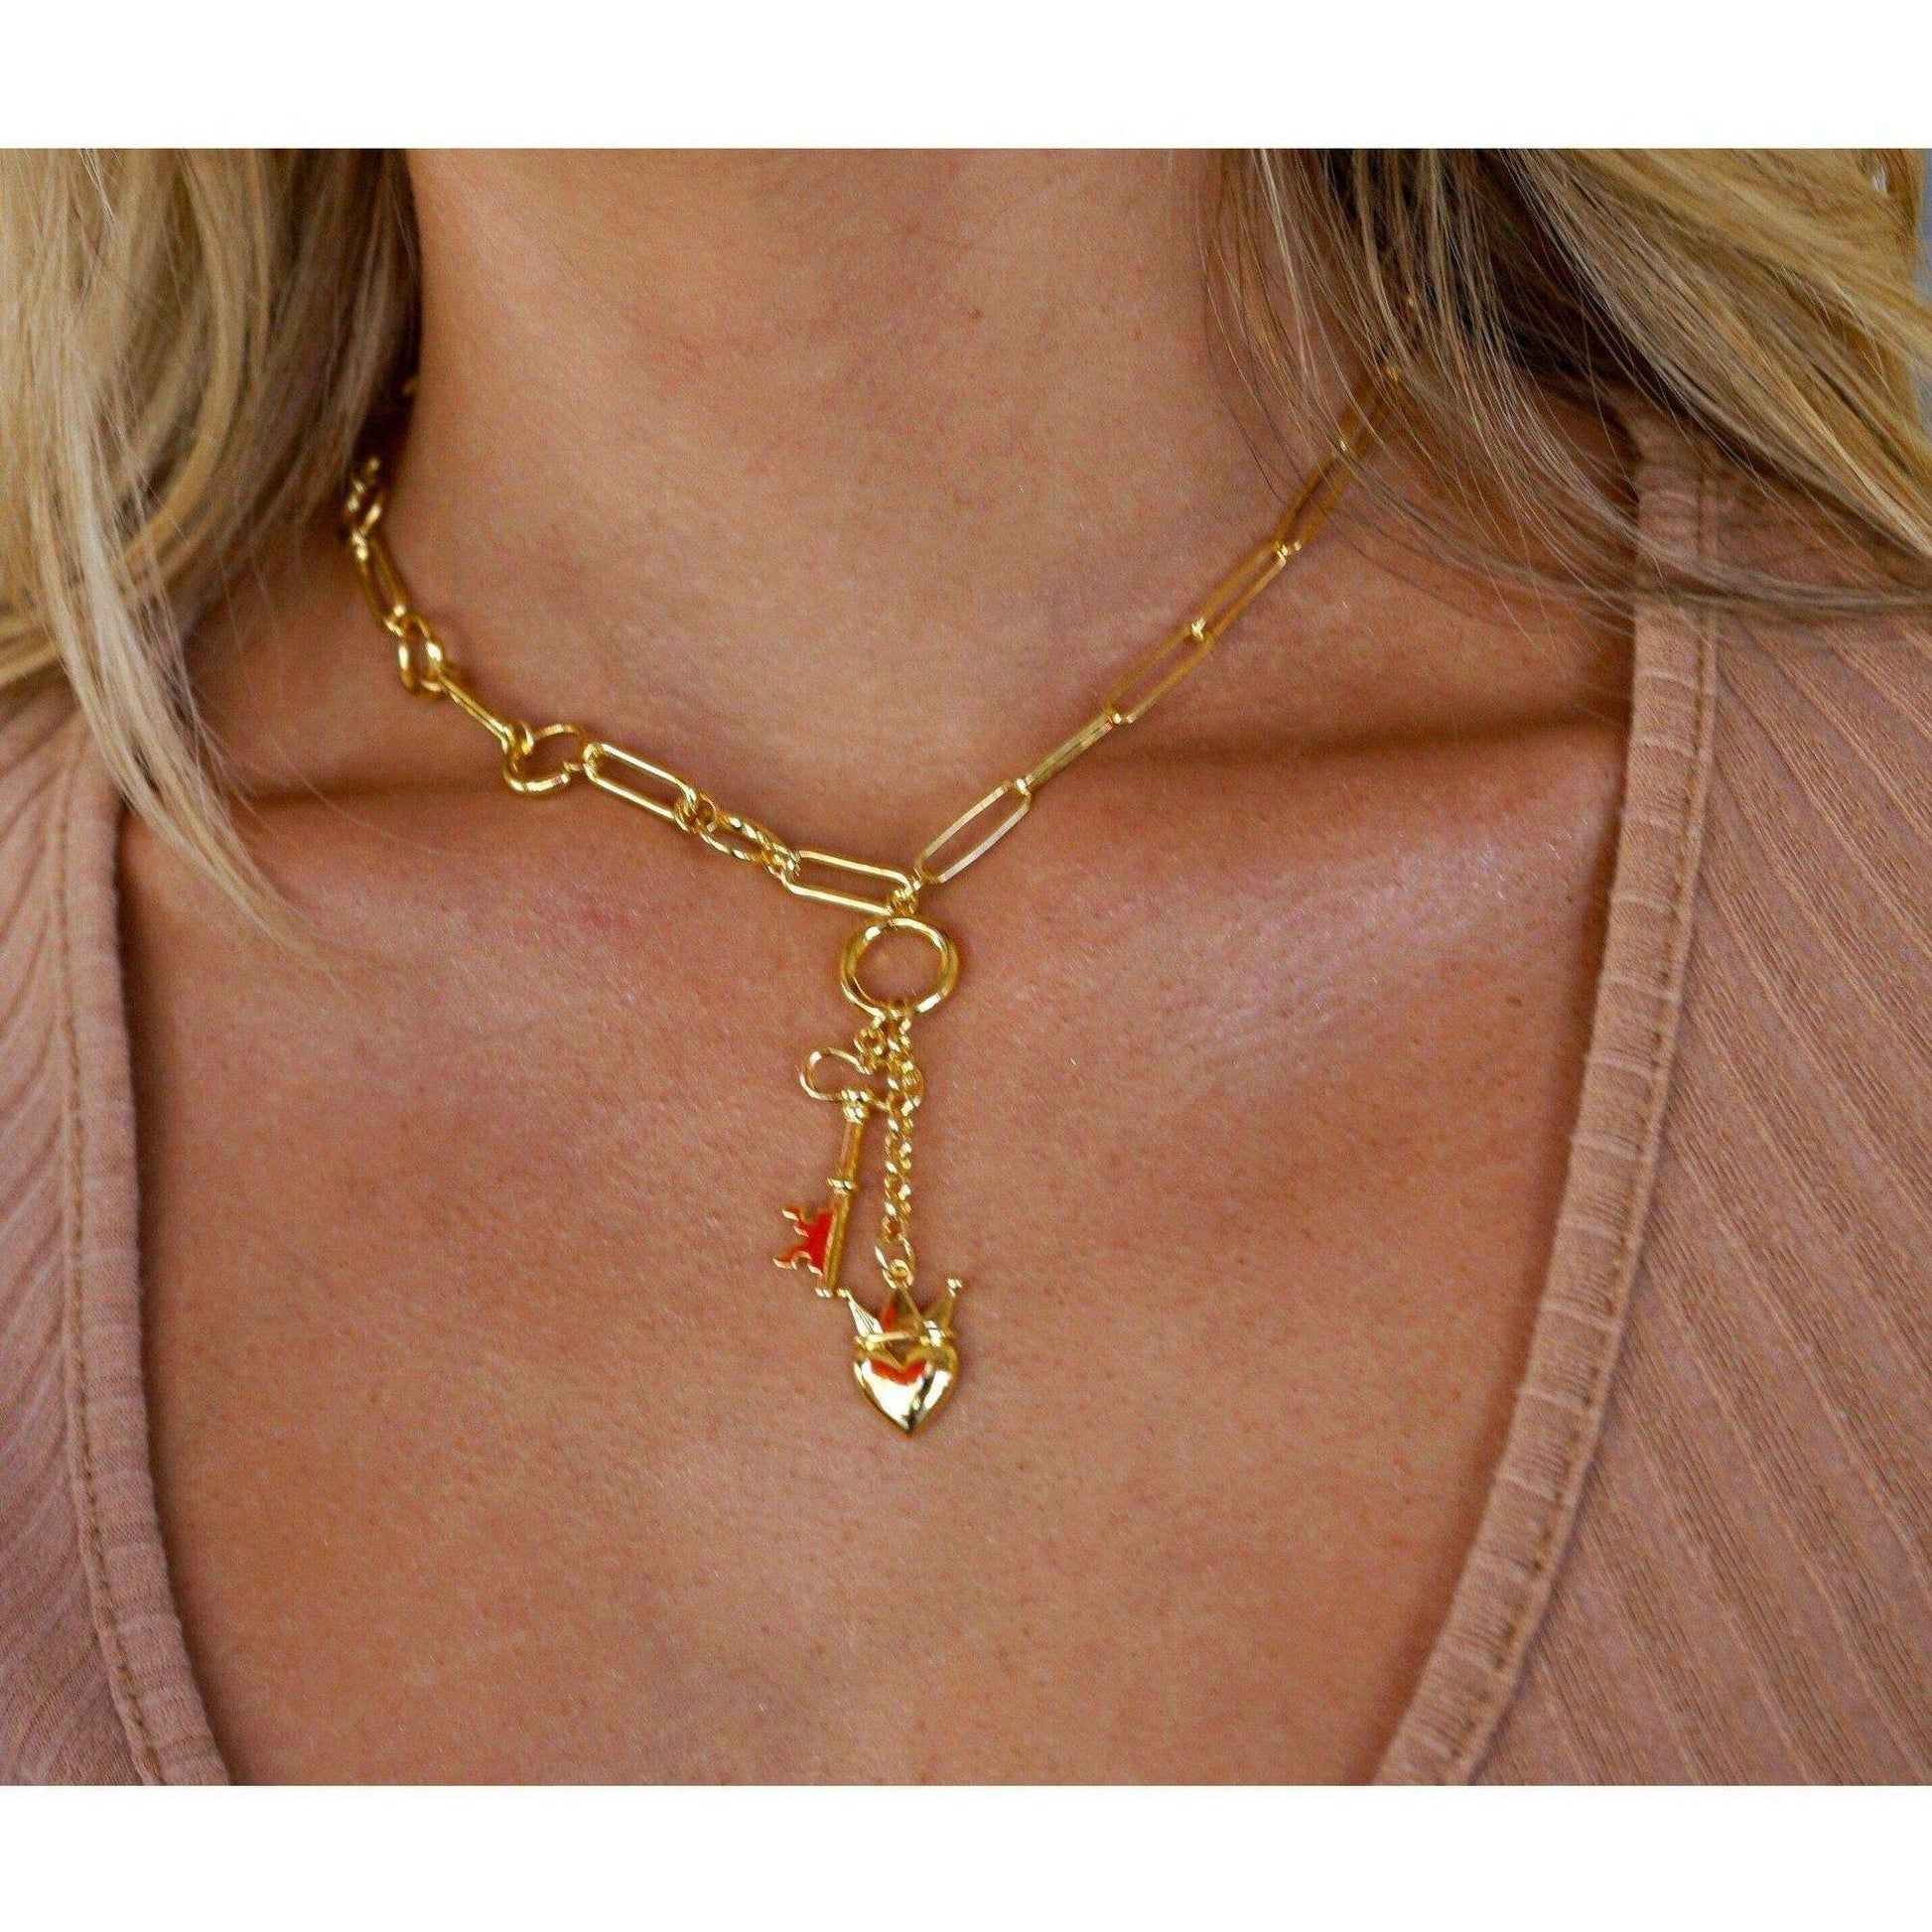 Sahira Jewelry Design - Heart Locked Lariat - Gold, ACCESSORIES, Sahira Jewelry Design, Plum Bottom